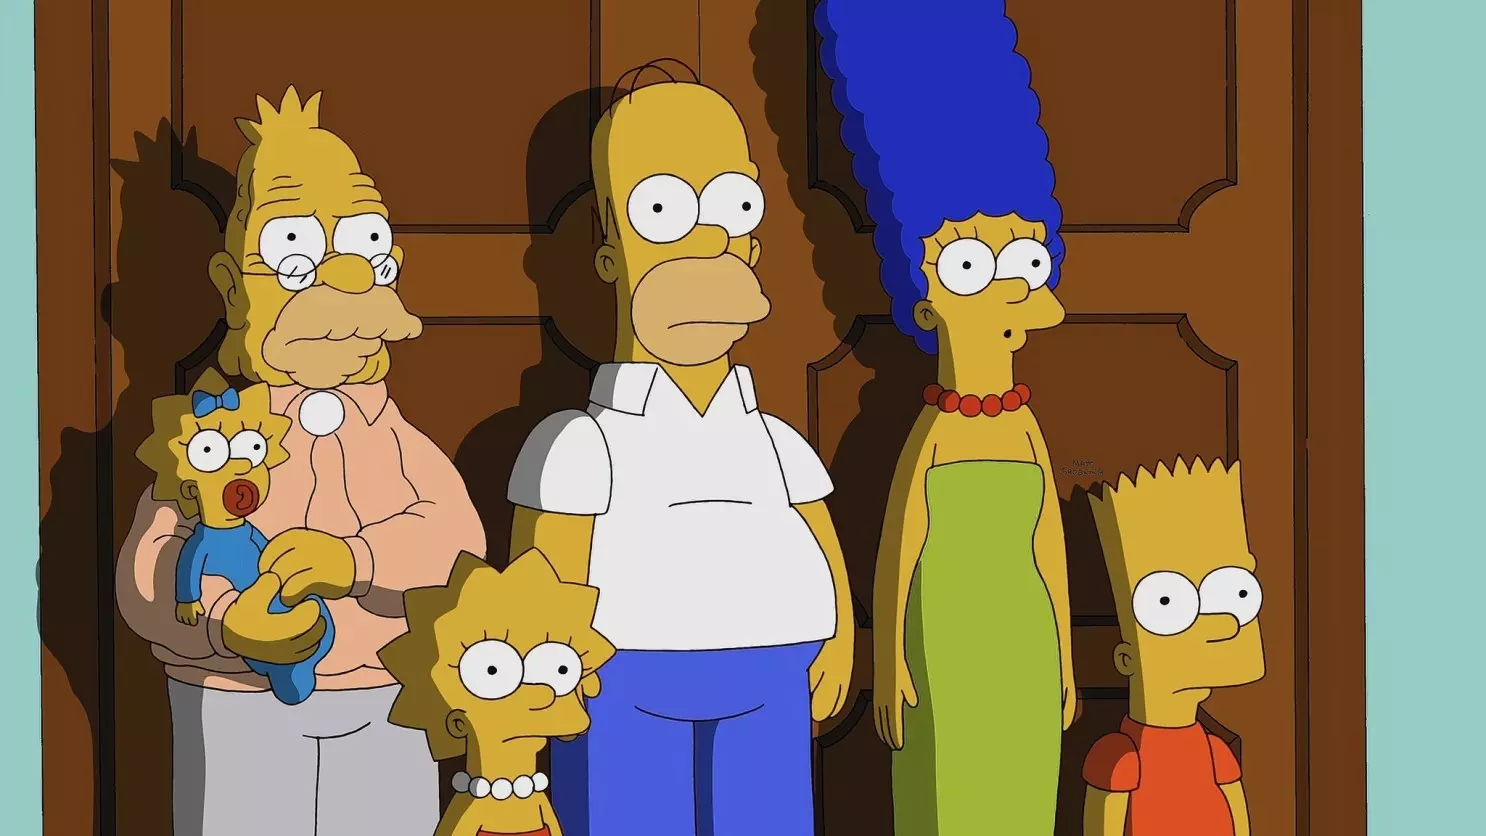 Ünlü animasyon dizisi "The Simpsons" (Simpsonlar), kehanetleriyle tanınan ve yıllardır geniş bir hayran kitlesine sahip olan bir yapım olarak öne çıkıyor.